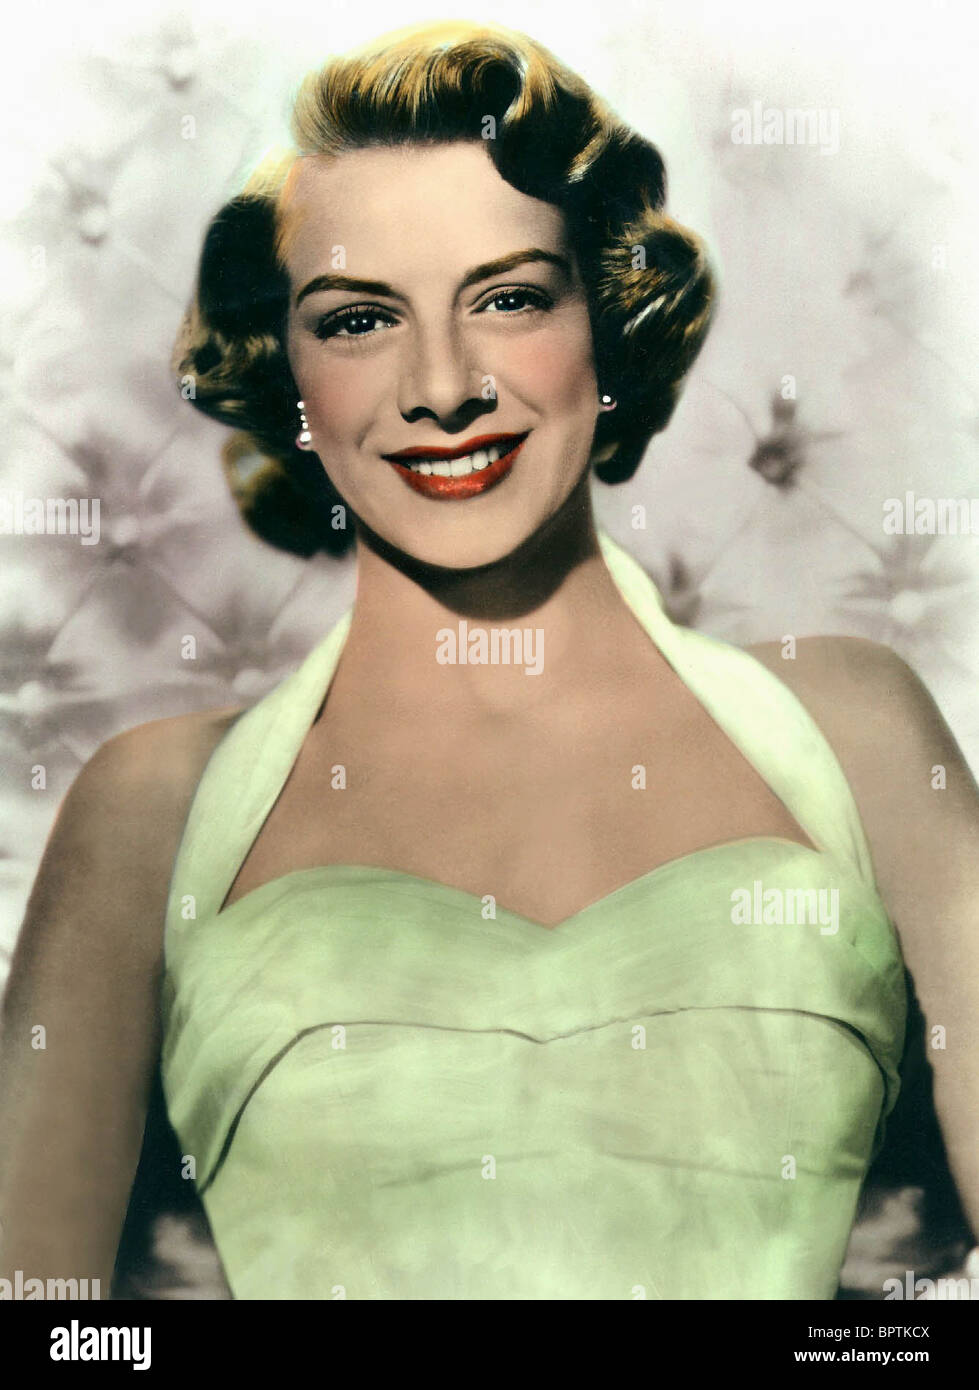 ROSEMARY CLOONEY ACTRESS (1955) Stock Photo